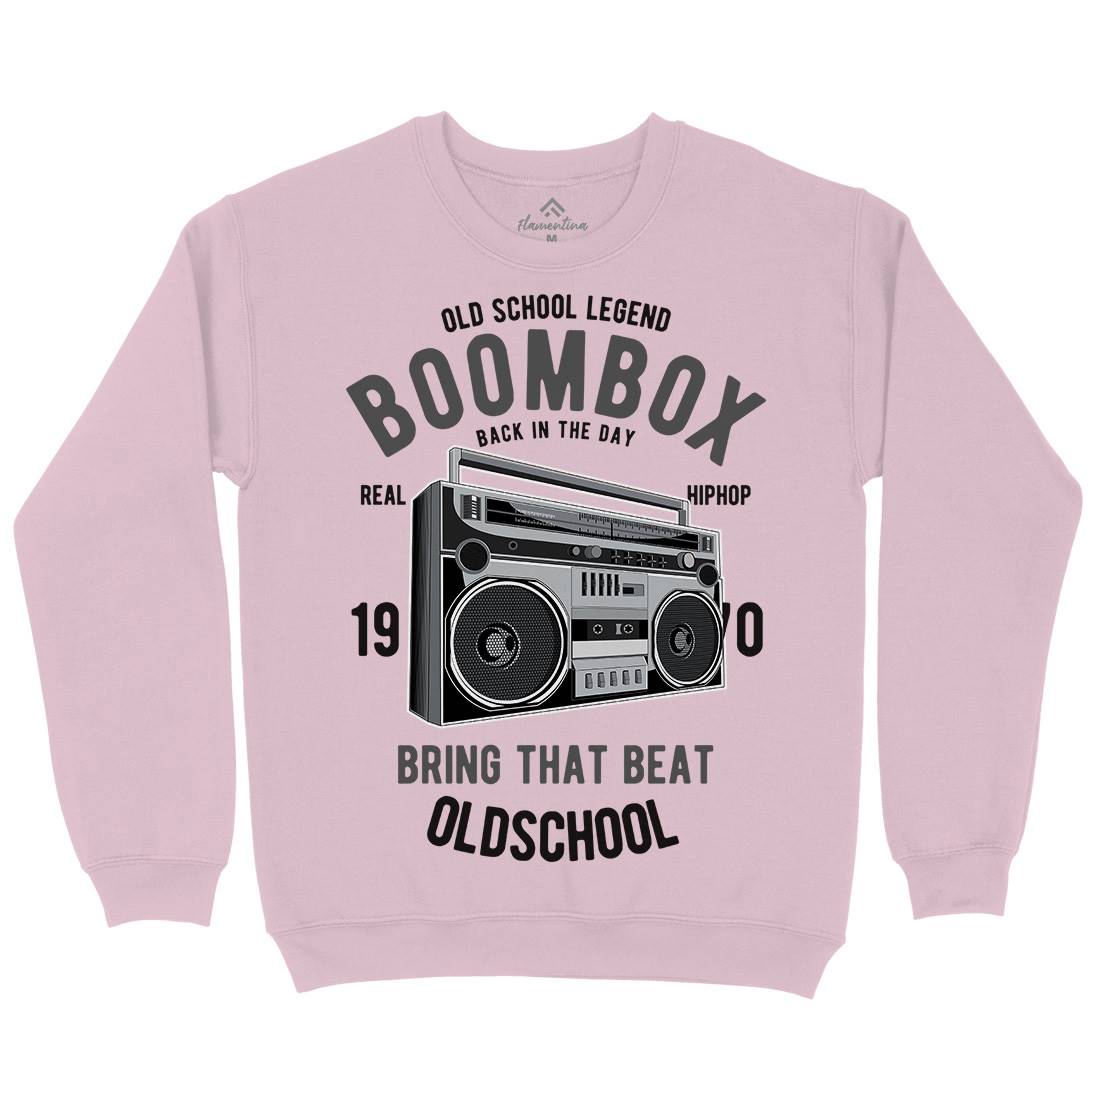 Boombox Kids Crew Neck Sweatshirt Music C319